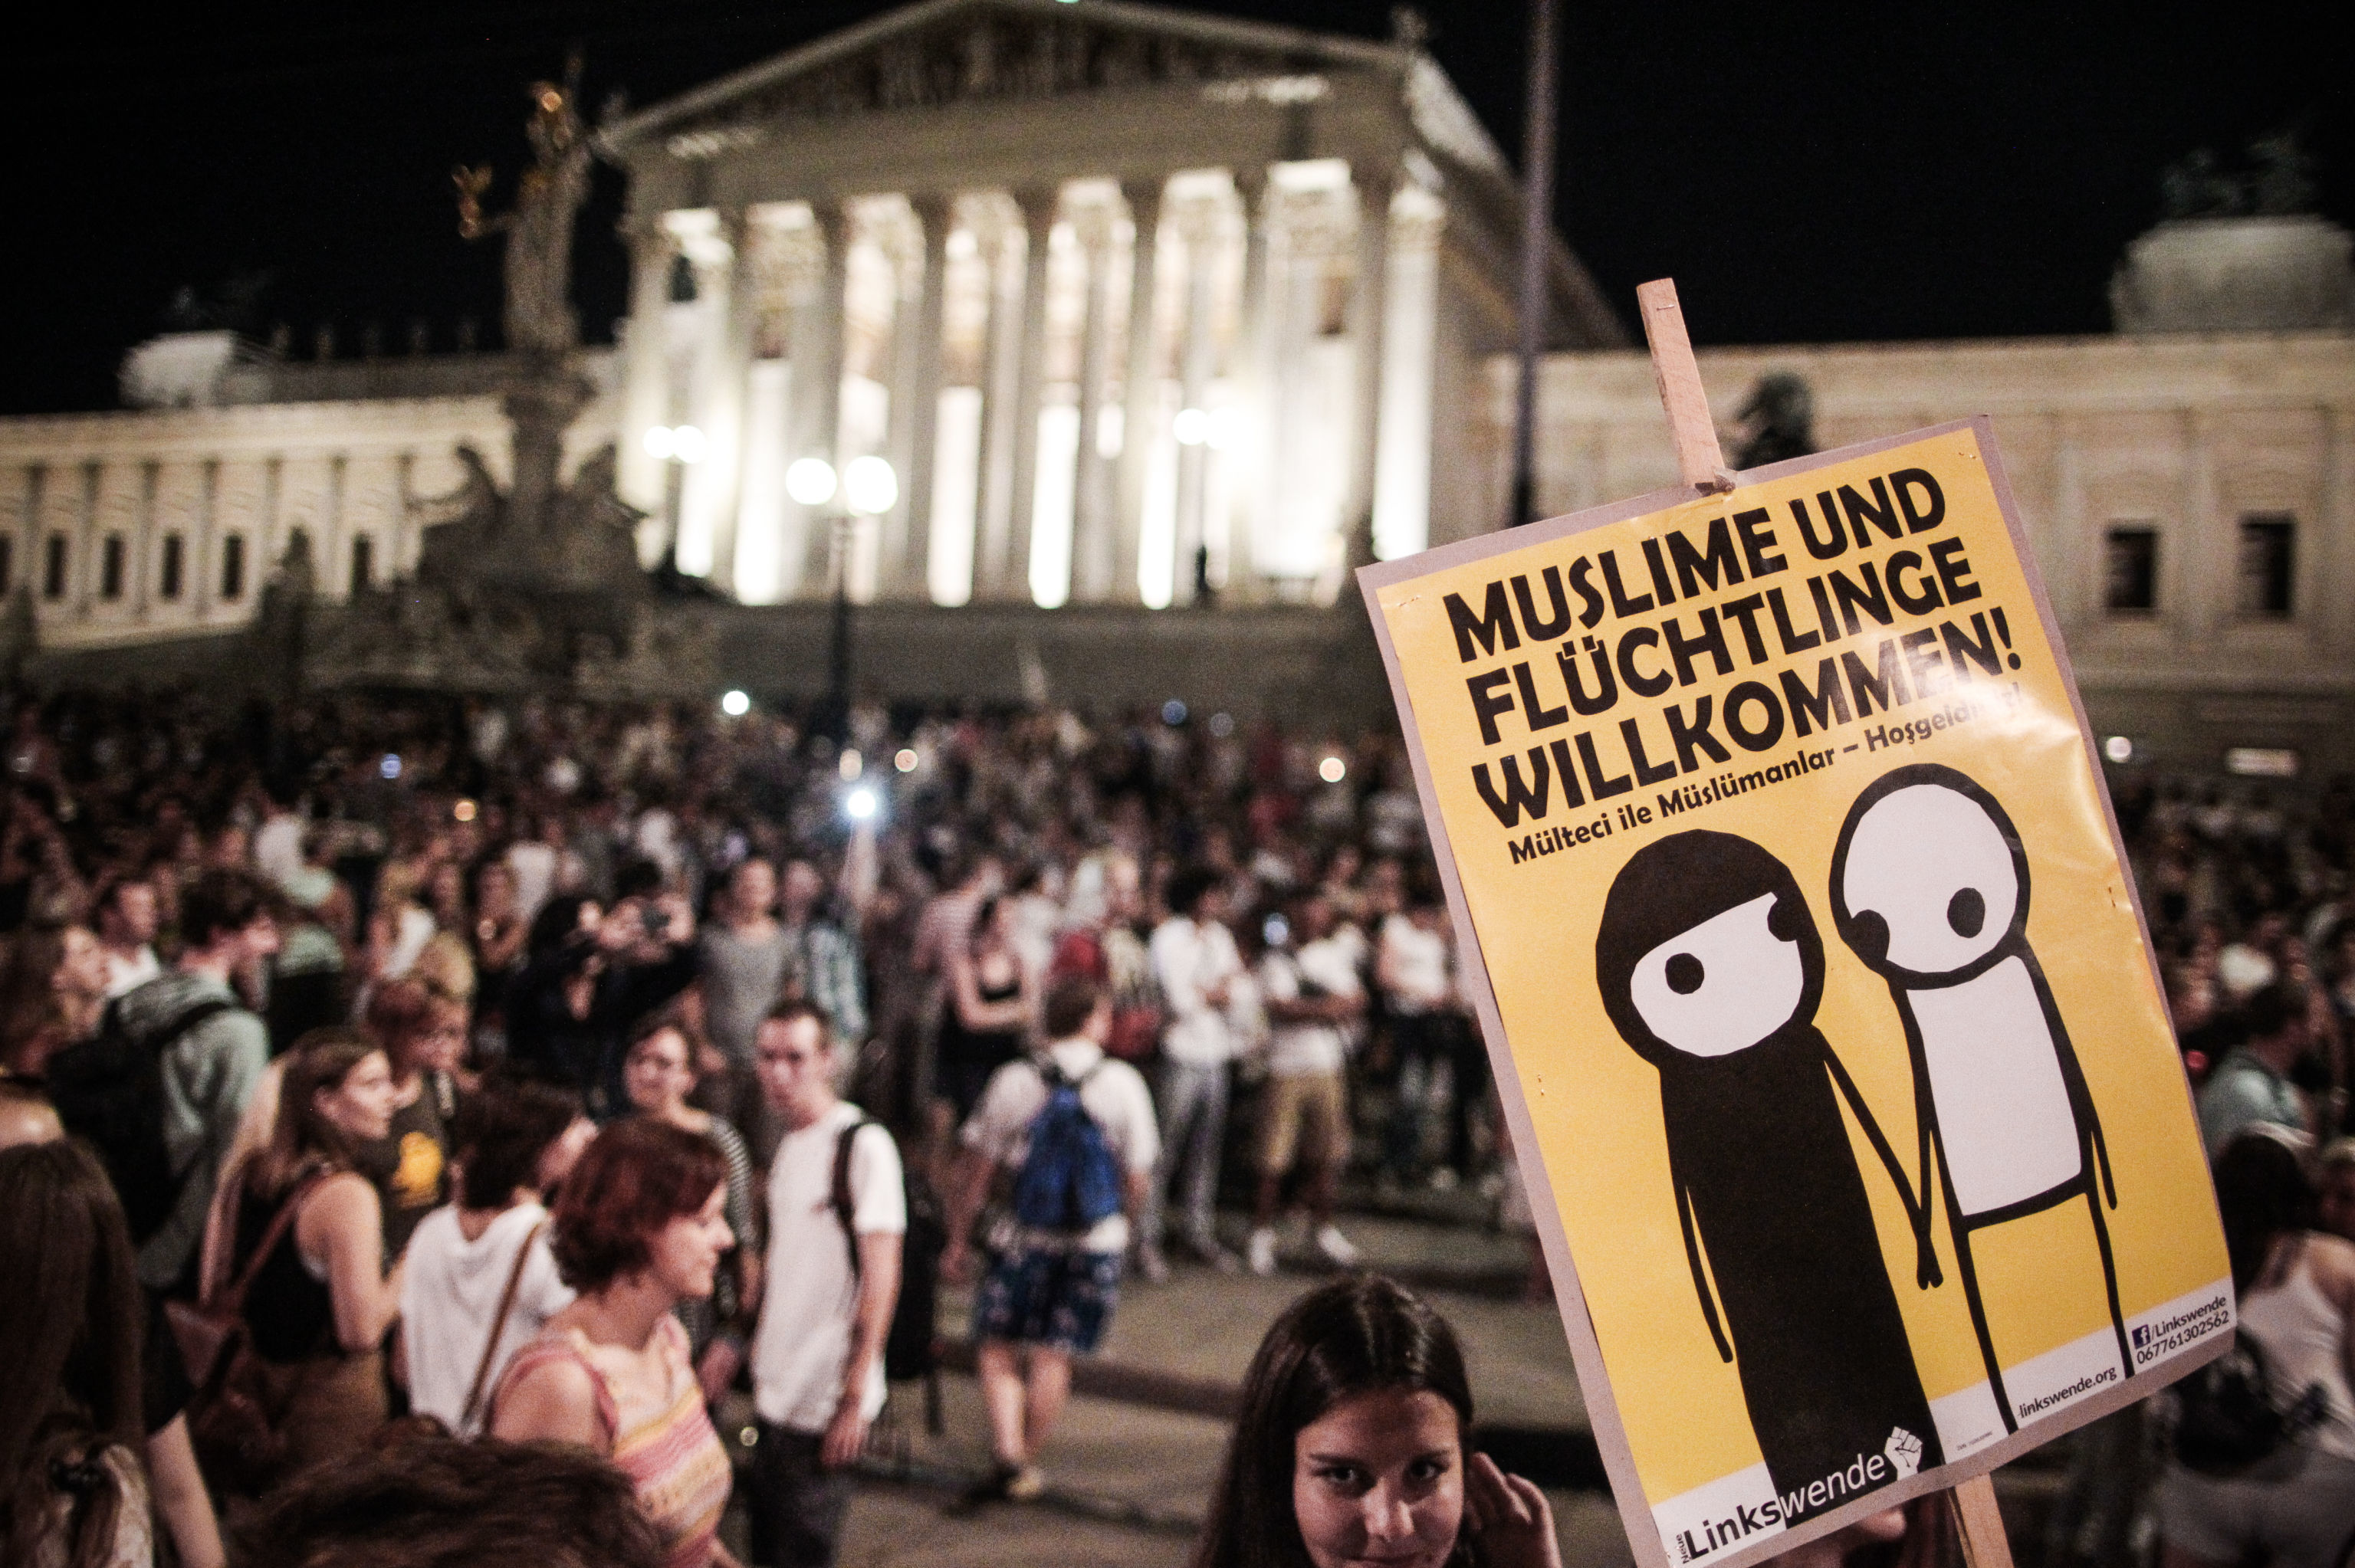 Баннер с  надписью "Мусульмане и беженцы приветствуются" на демонстрацию в Вене